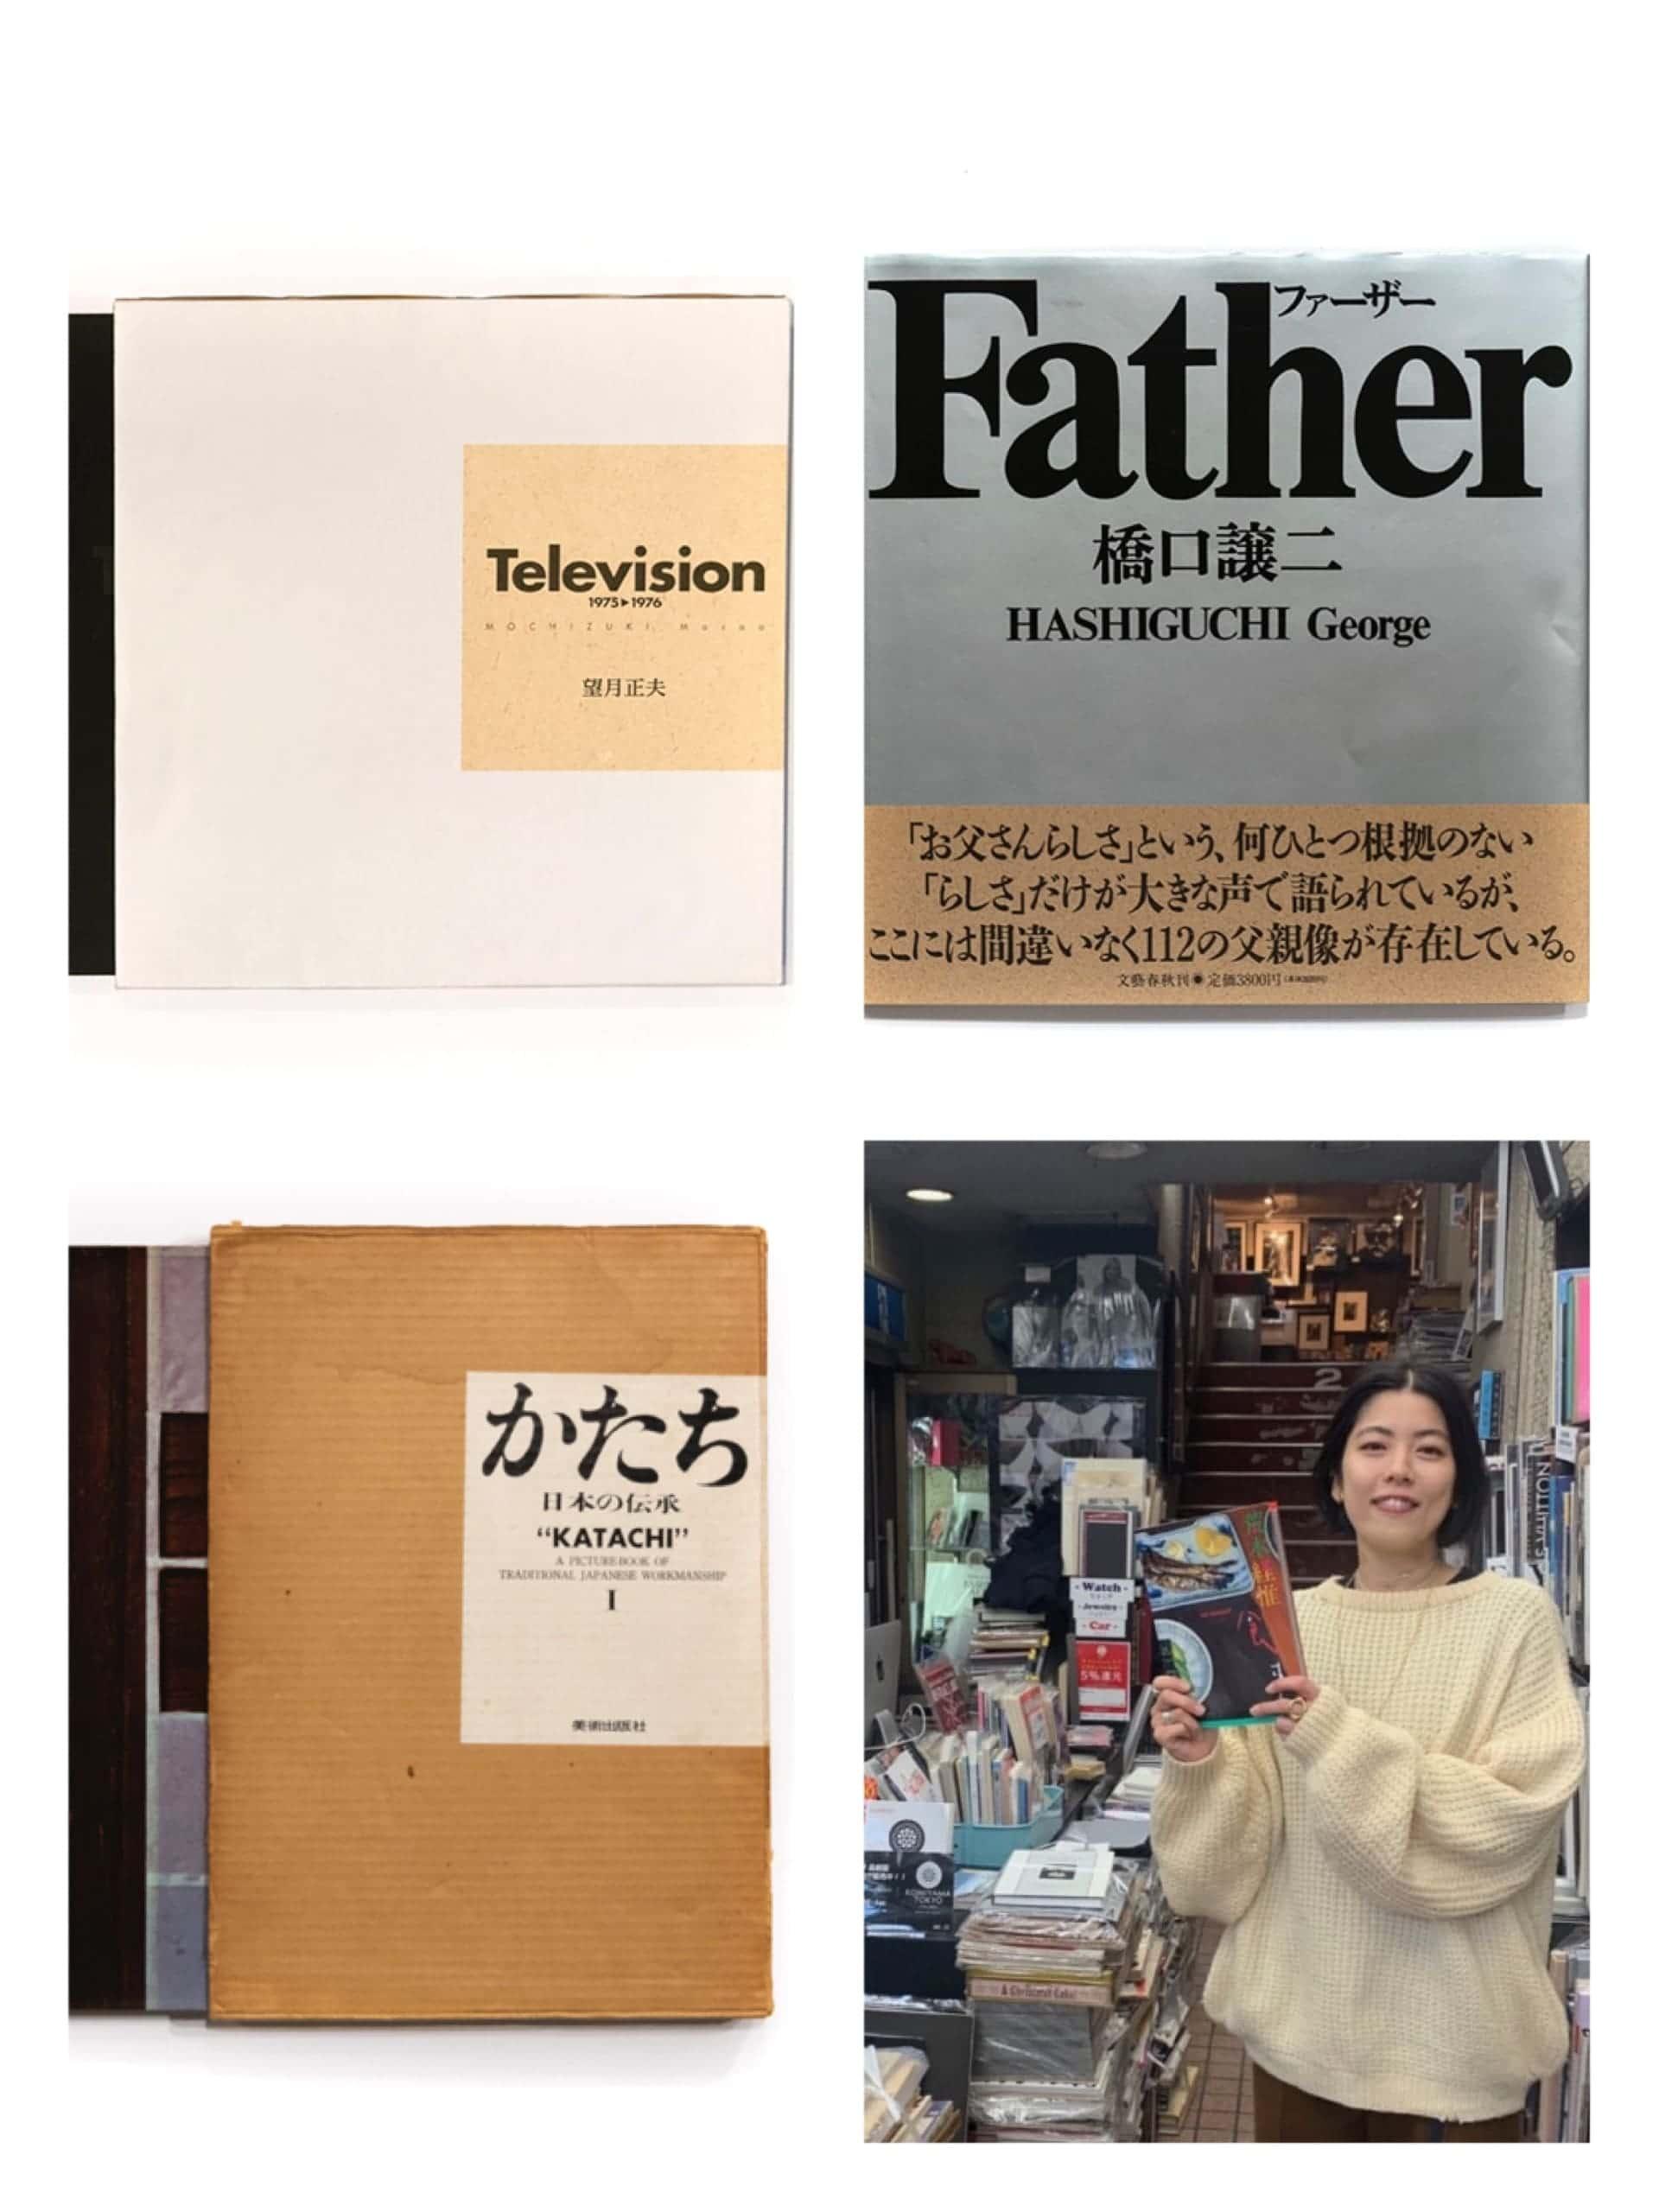 自分の世界を広げる、読みもの案内。老舗古書店員、小宮山ユカさんの「気付いていなかった日本の姿に出合える3冊」